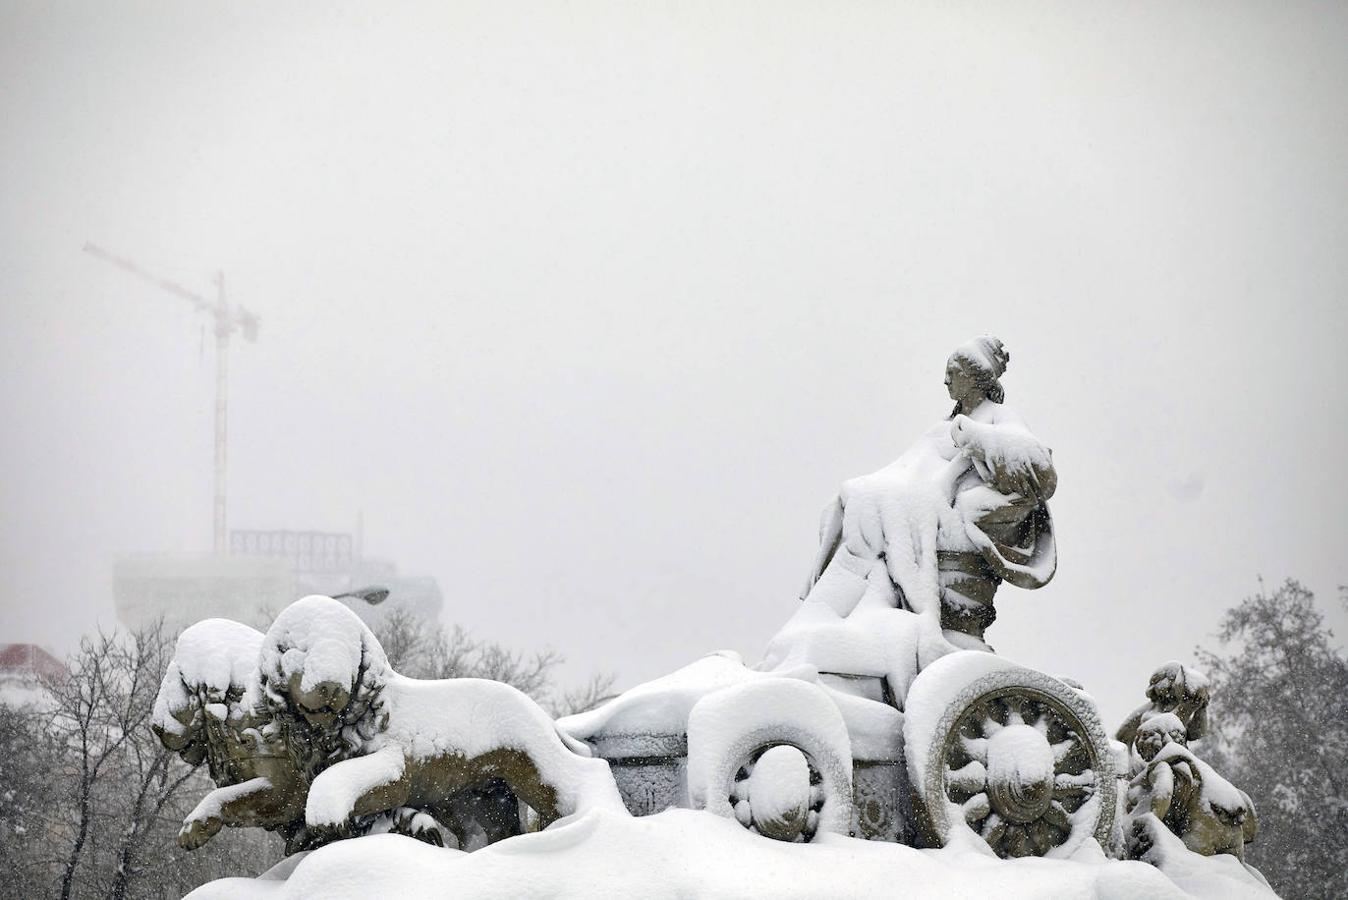 Toda la mañana. La primera mañana de esta 'gran nevada' todos disfrutaron de la nieve y se divirtieron en el manto blanco.